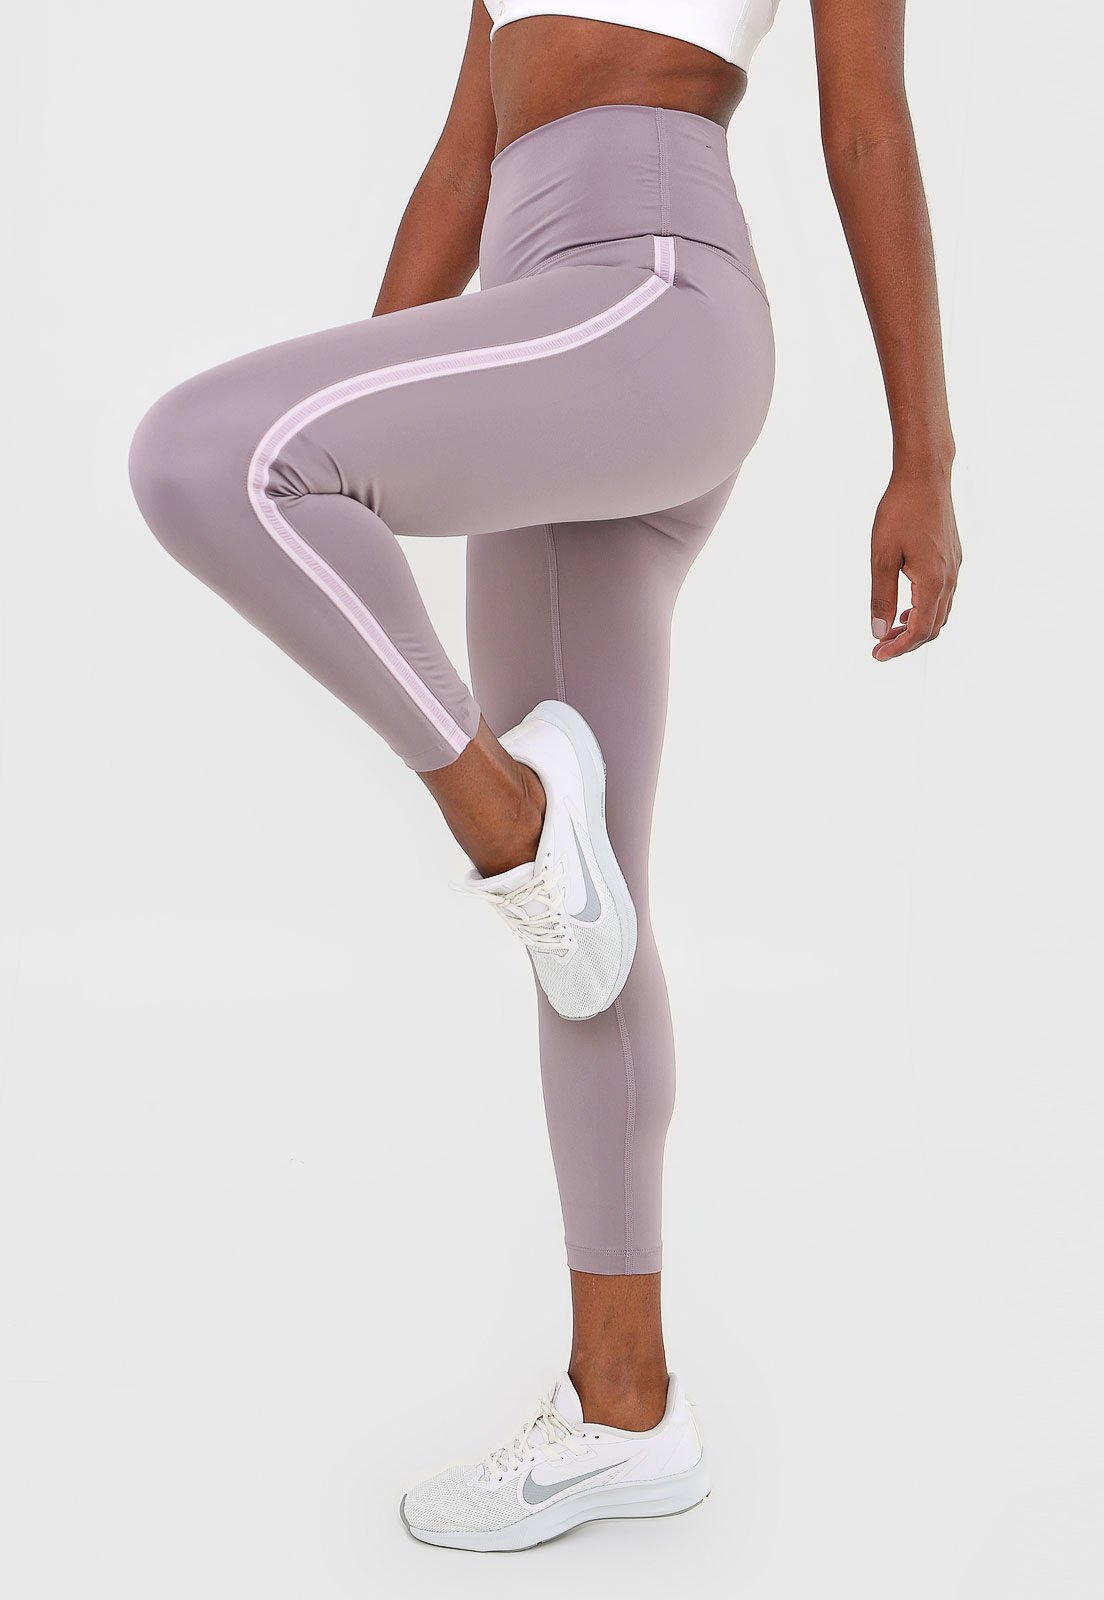 Legging Nike Yoga 7/8 Tight Lilás - Compre Agora